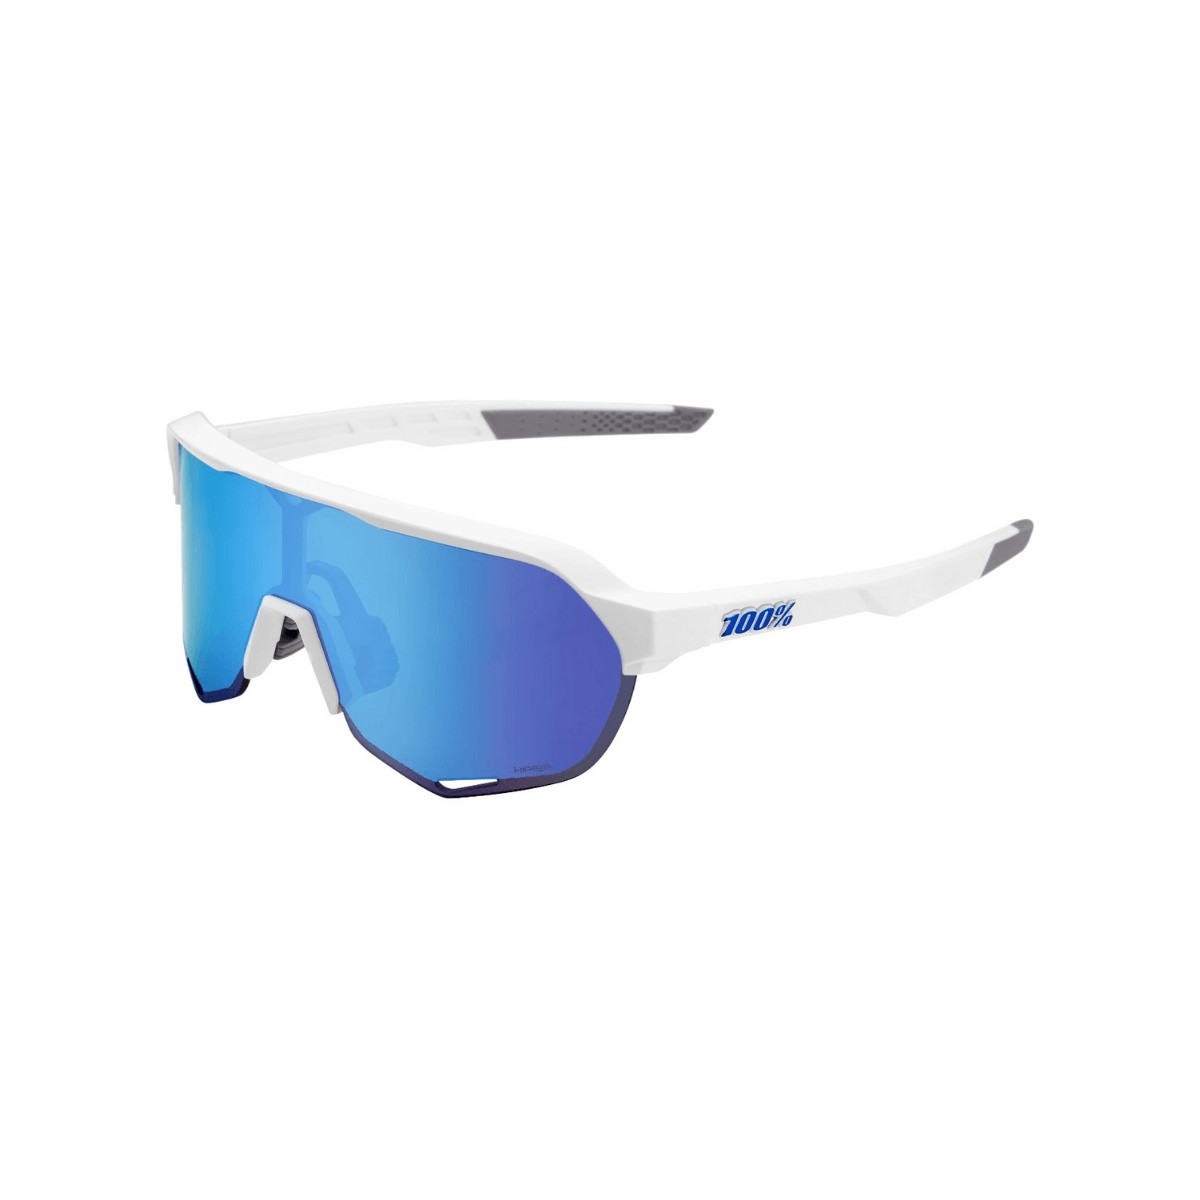 100% S2 Brille - Mattweiß - Multilayer Hyper Blue Gläser